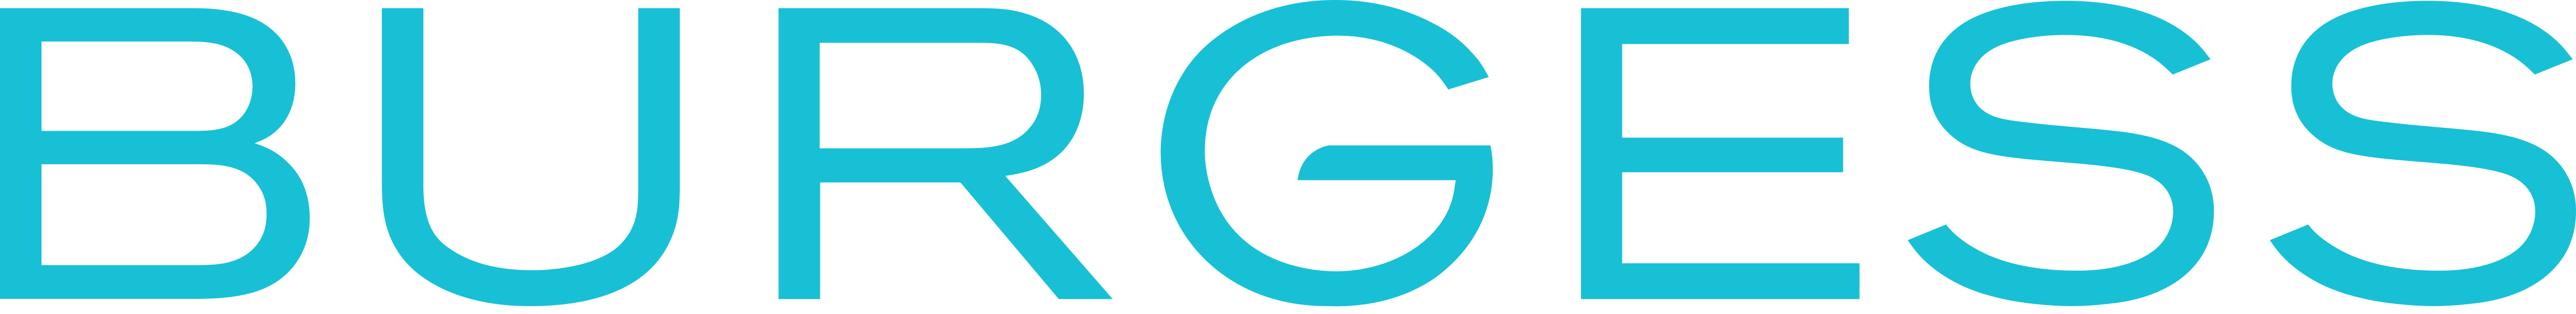 Burgess_logo